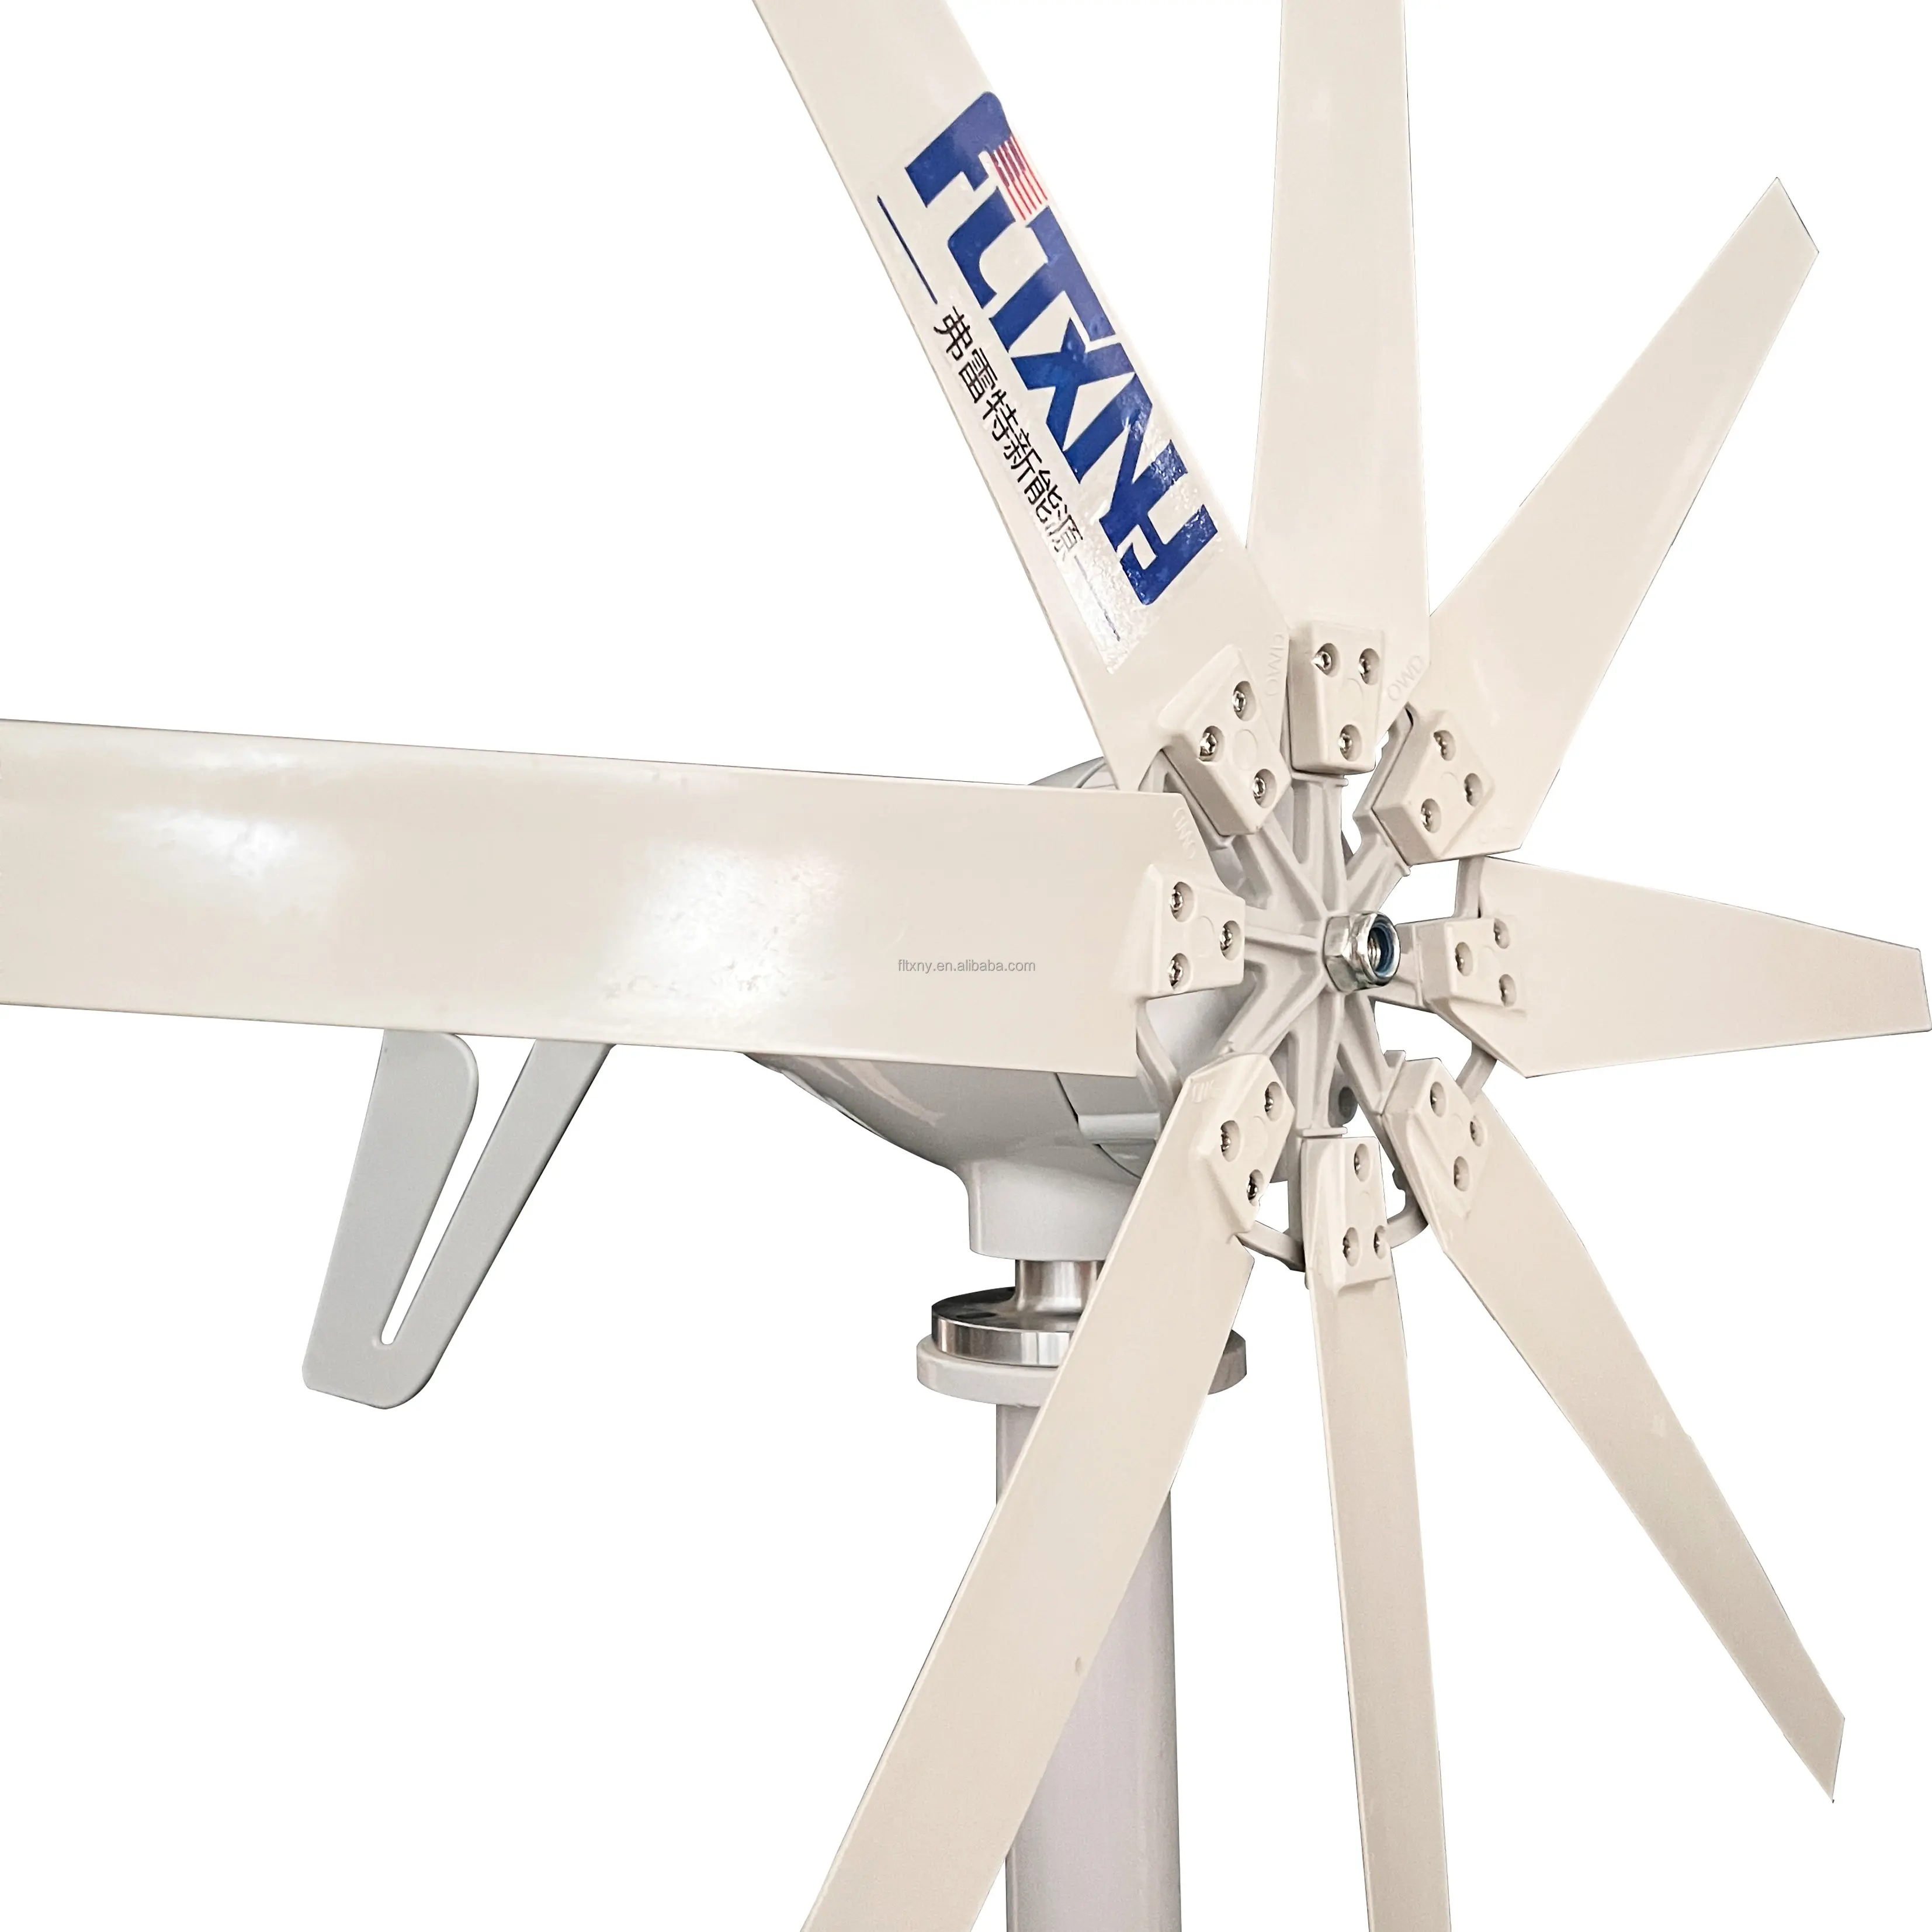 1000w 24v pequeno gerador eólico turbina eólica gerador vento horizontal